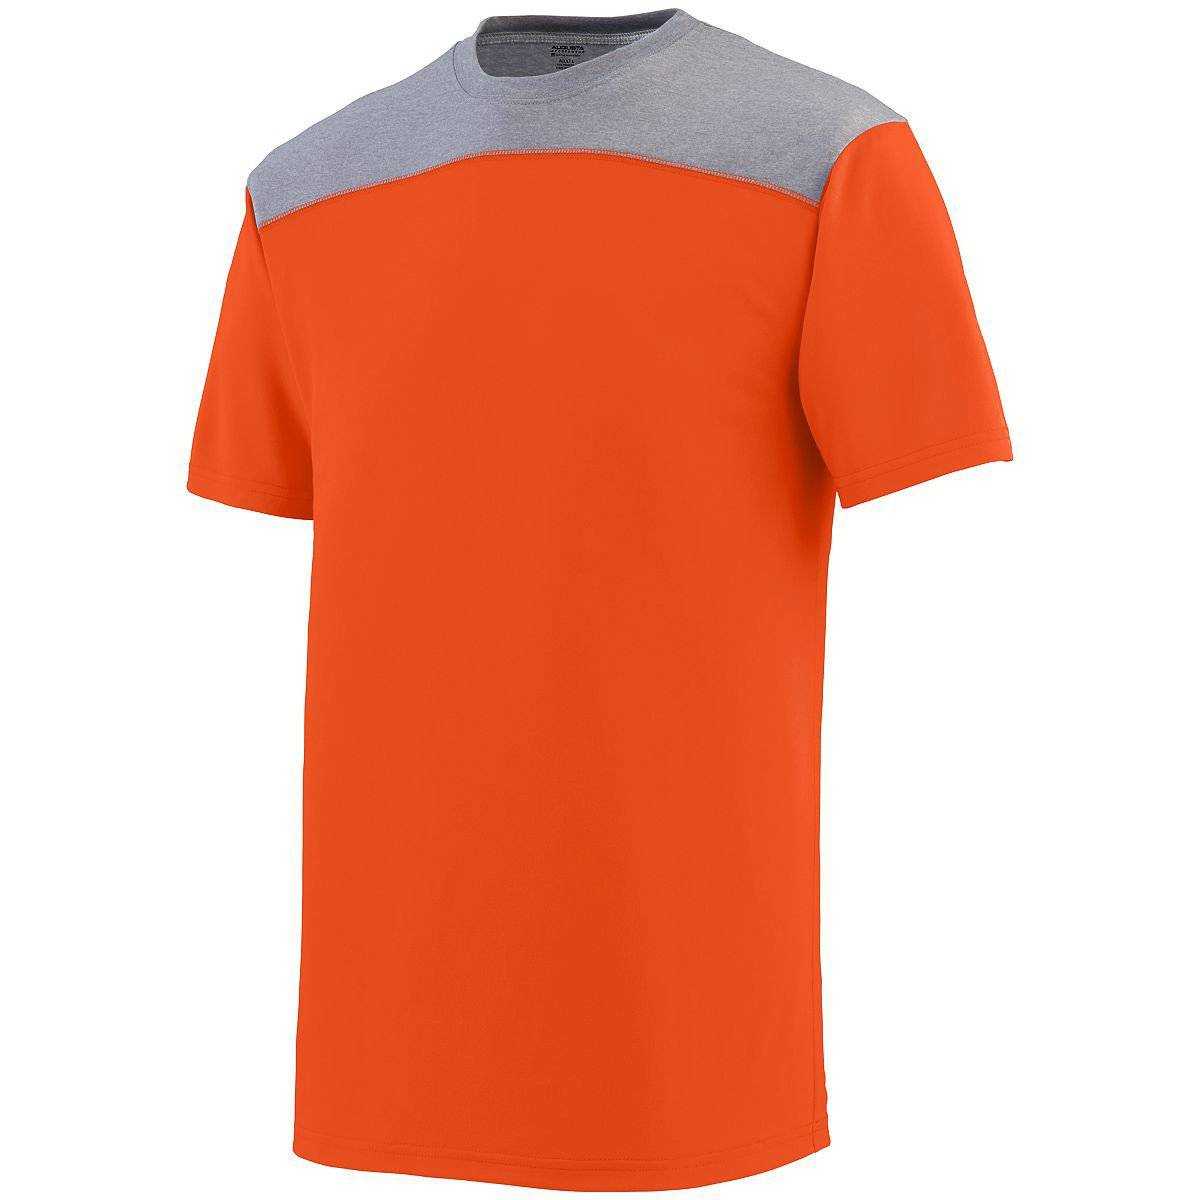 Augusta 3055 Challenge T-Shirt - Orange Dark Gray - HIT a Double